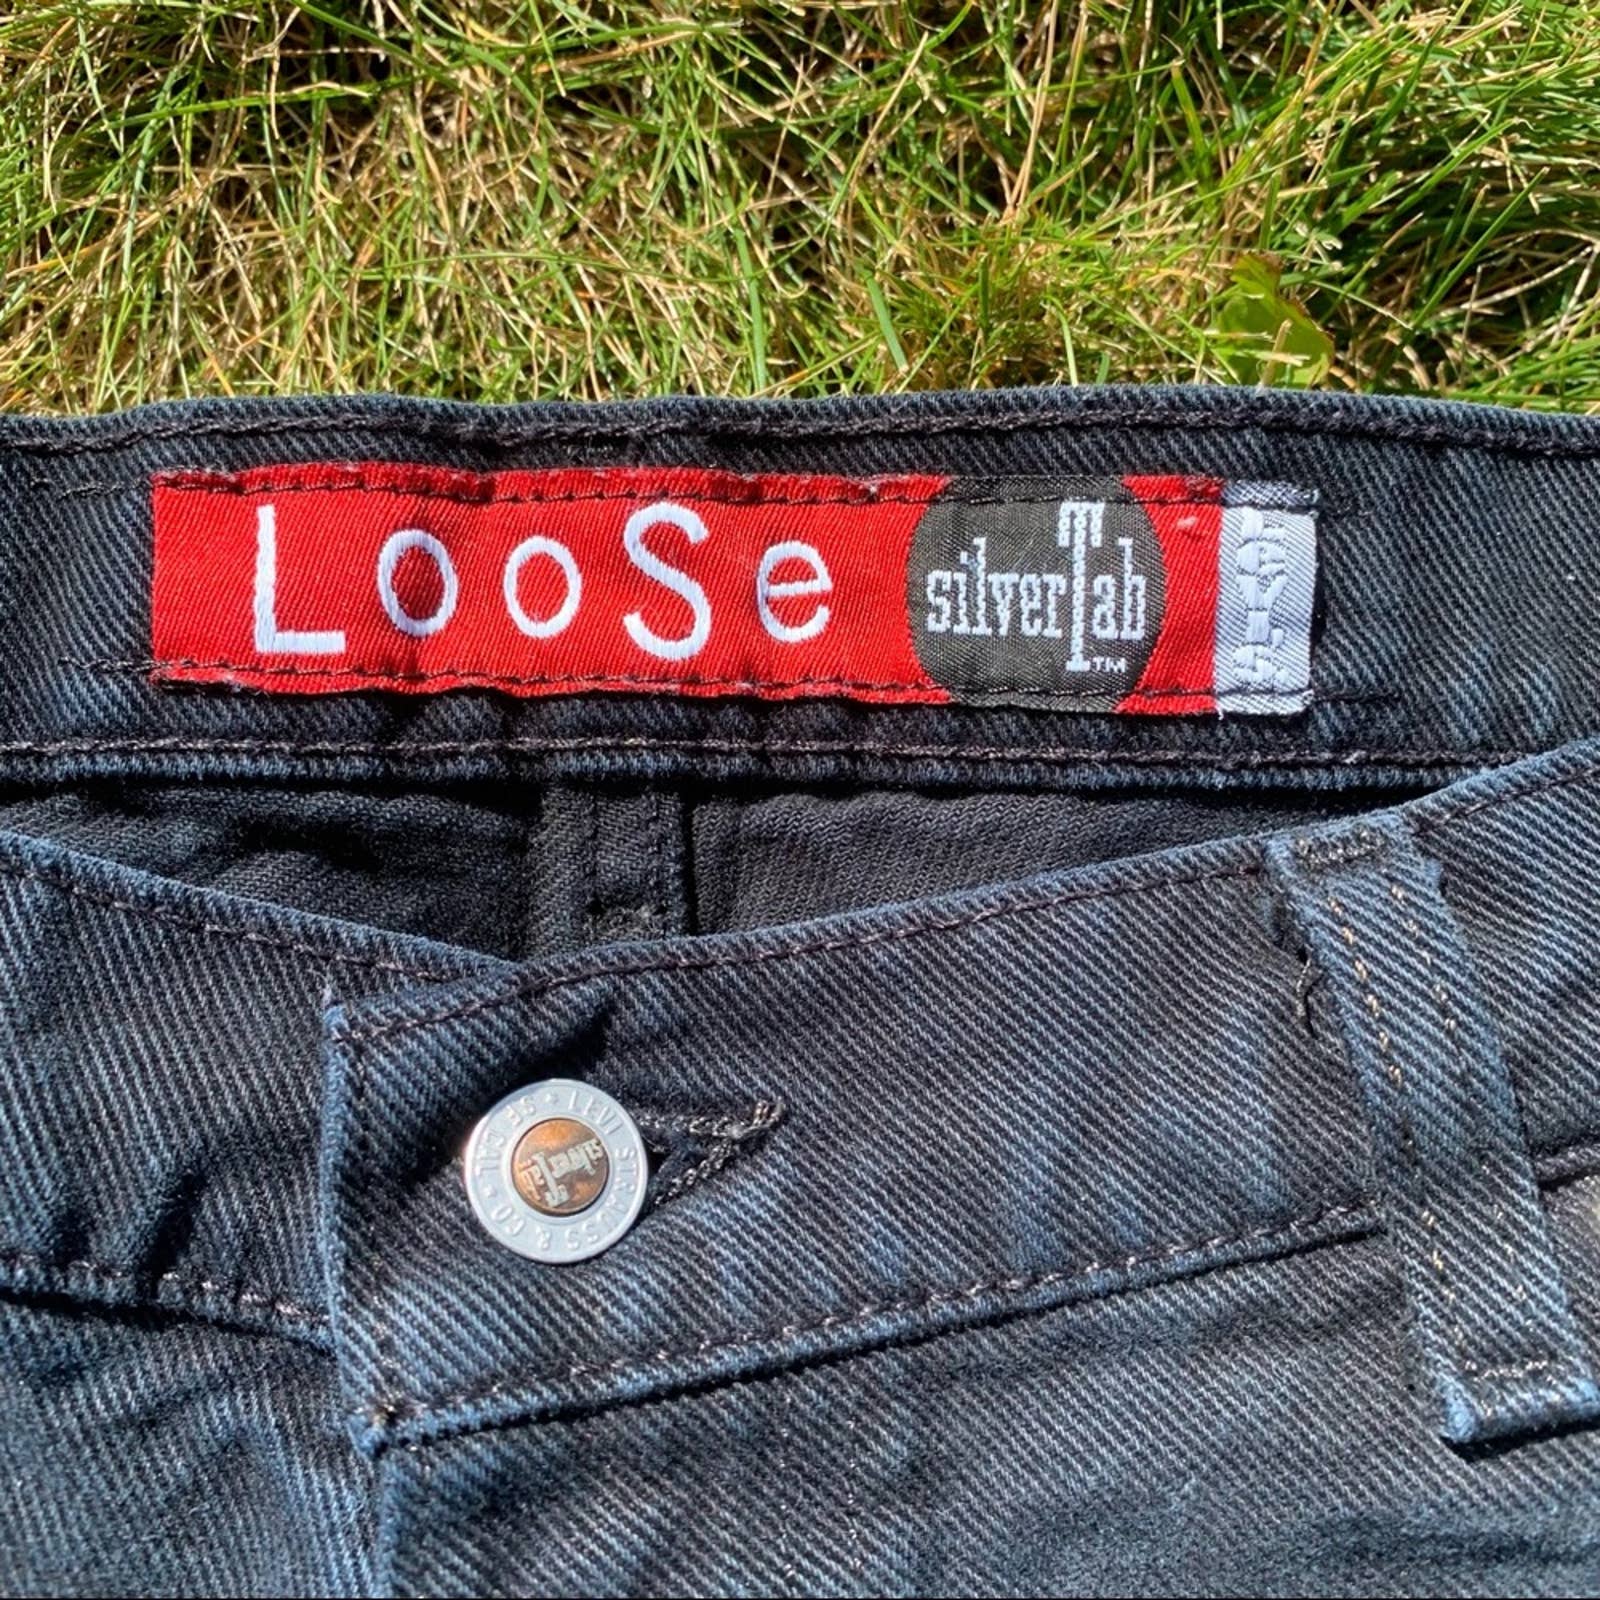 Vintage 90s Levis Silvertab Loose Fit Black Jeans by Levi's | Shop